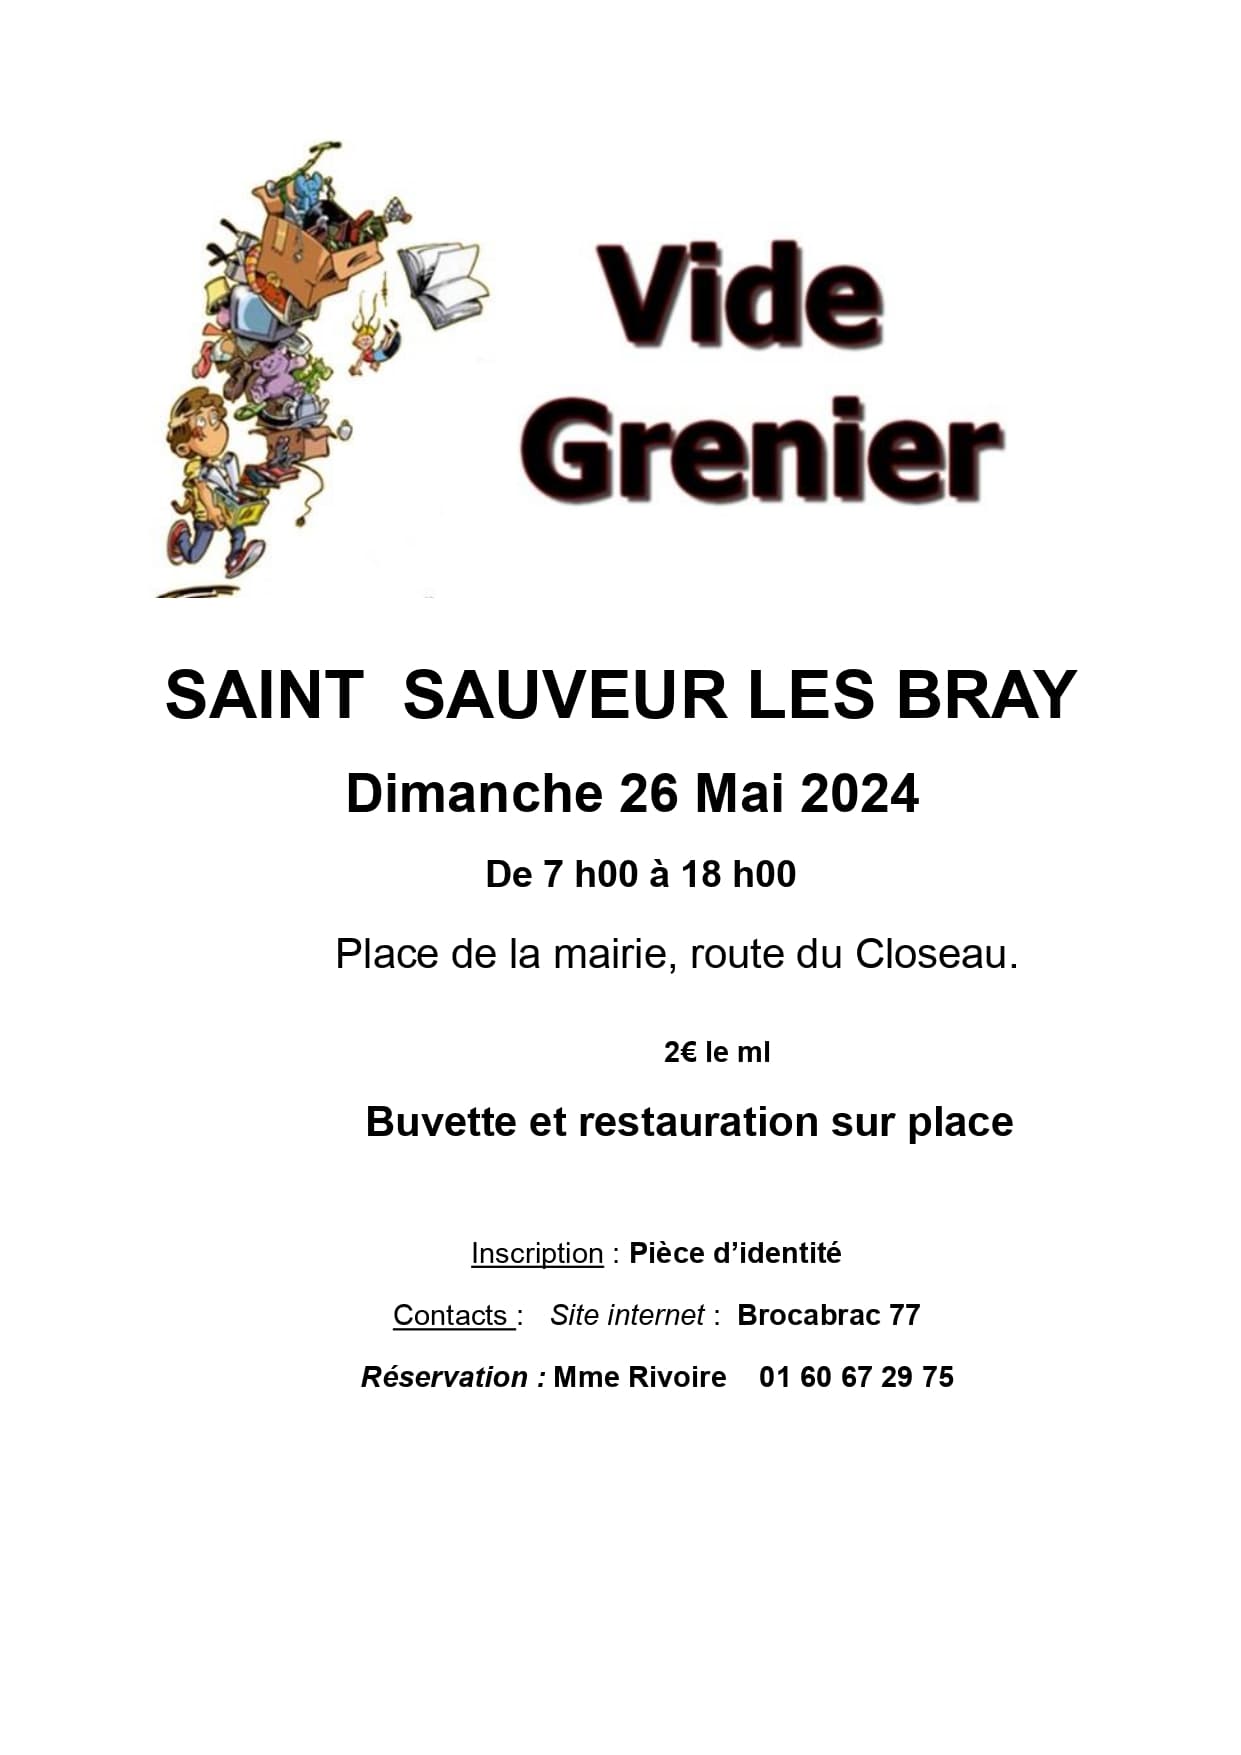 Vide grenier Saint-sauveur-les-bray